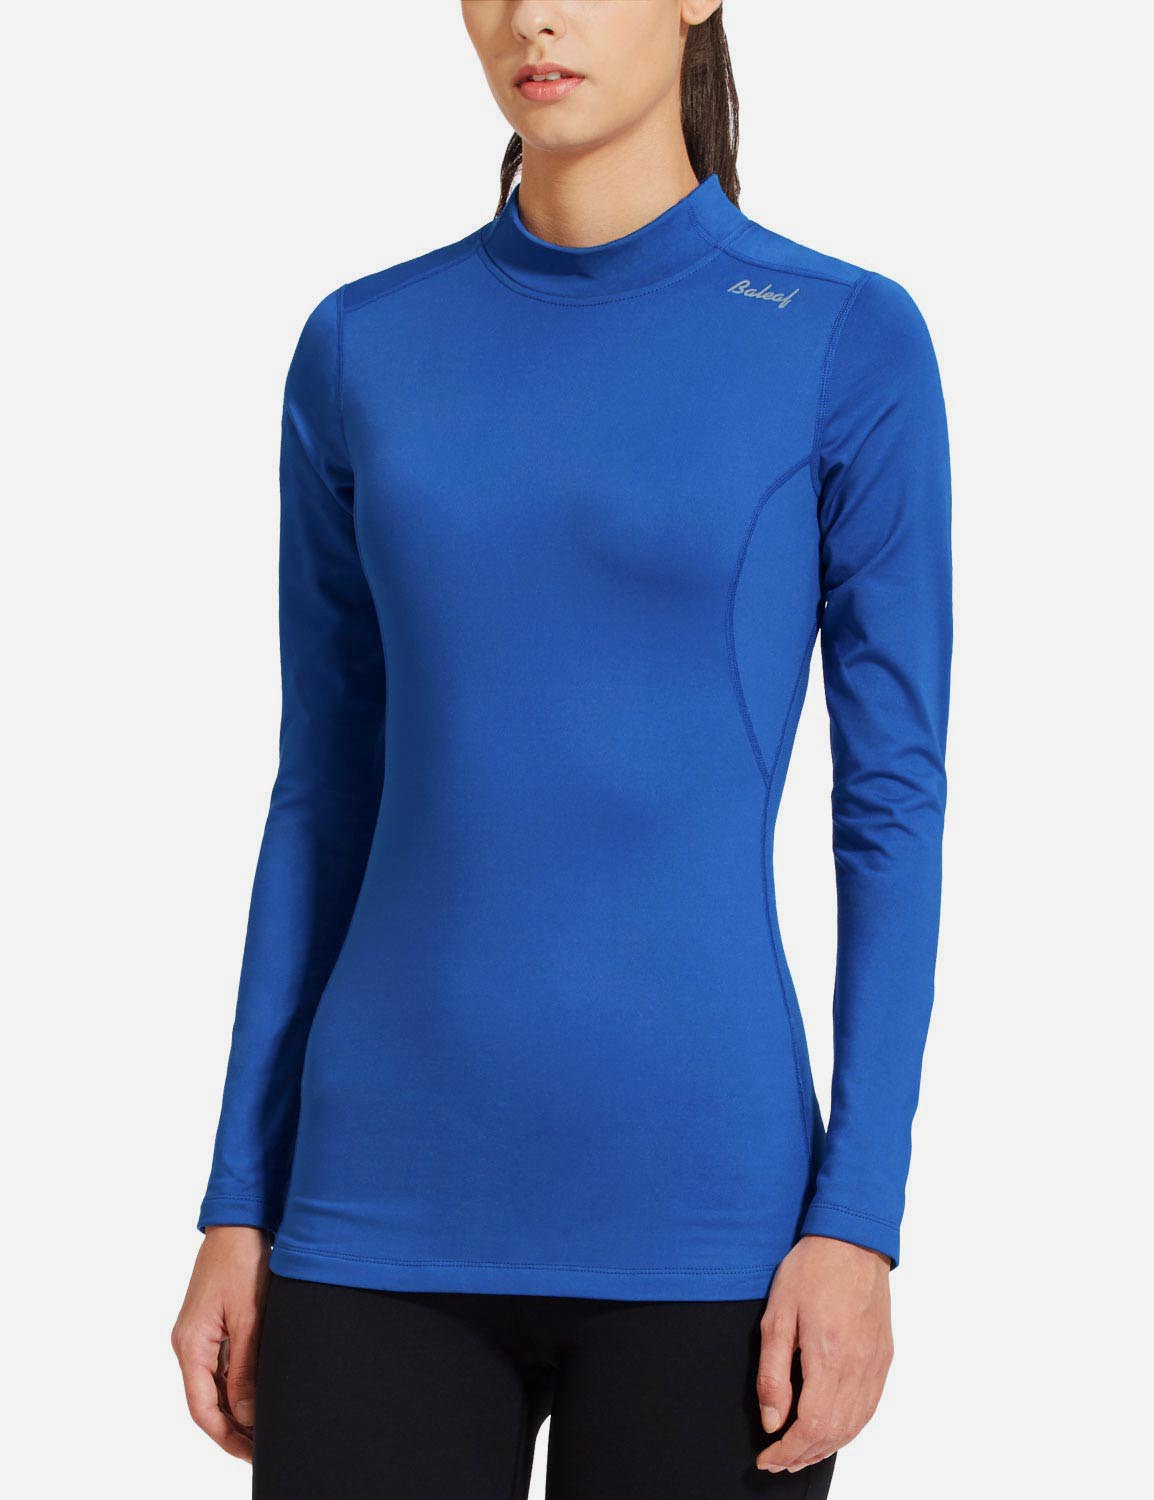 Baleaf Women's Basic Compression Mock-Neck Long Sleeved Shirt abd166 Blue Side